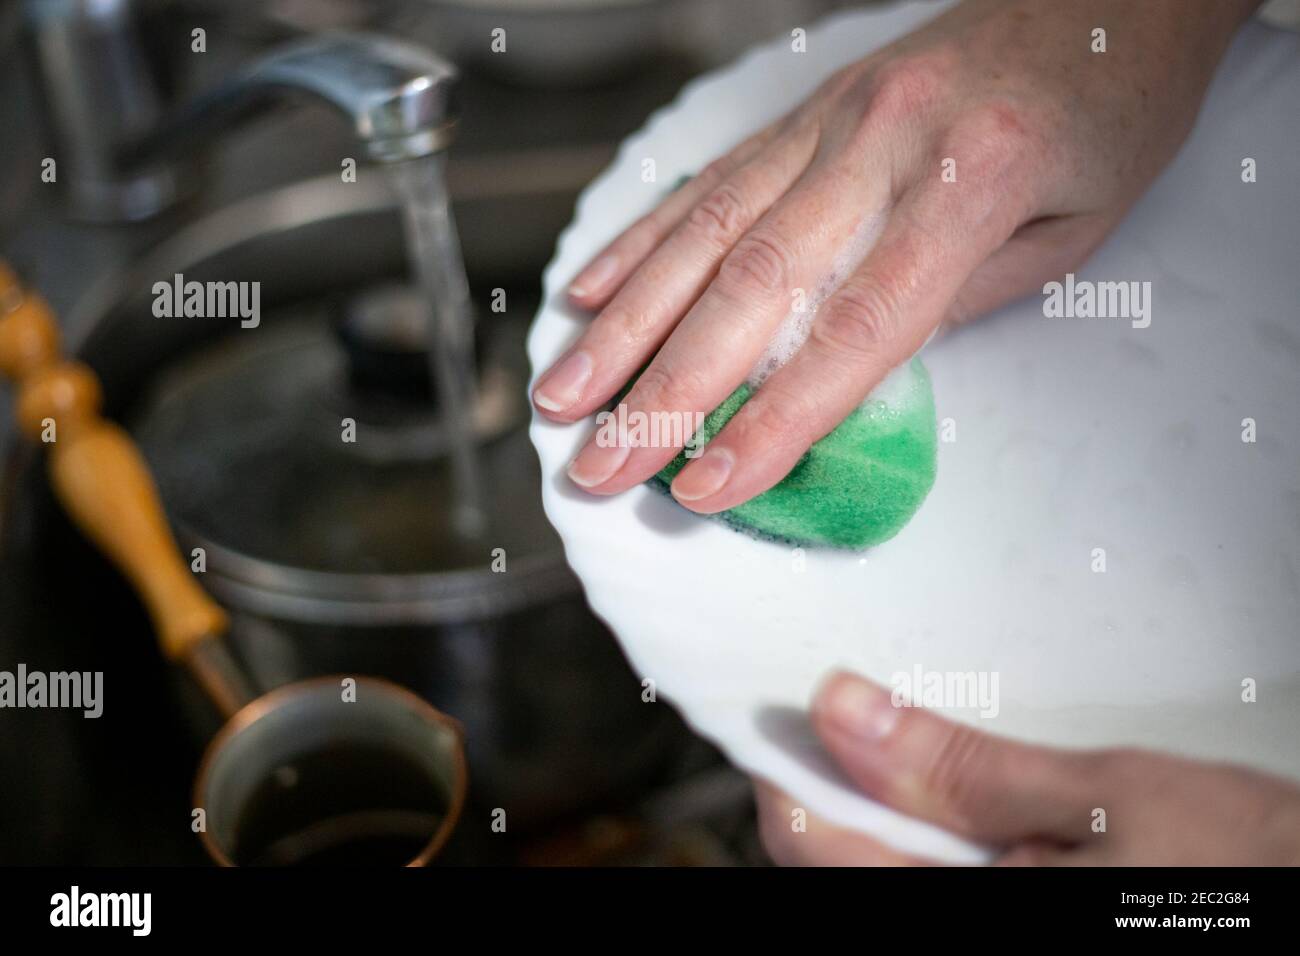 una donna lava i piatti con una spugna di schiuma, tiene un piatto nelle mani sopra il lavandino, l'acqua scorre dal rubinetto Foto Stock